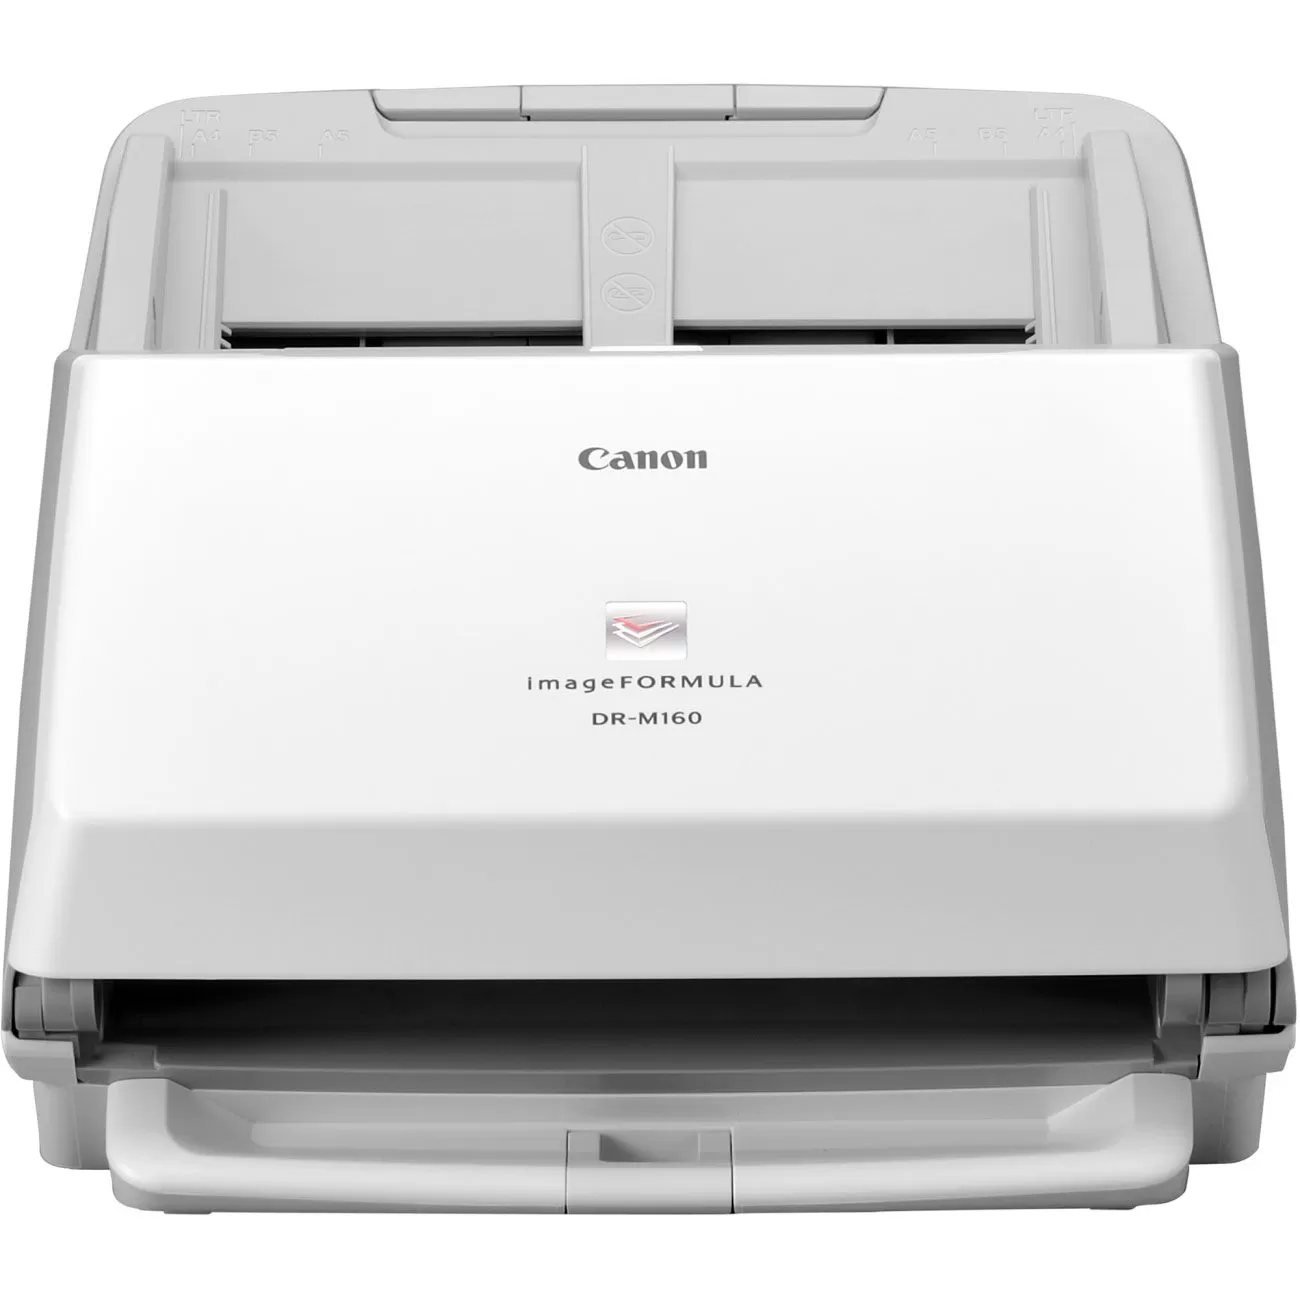 Scanner Canon imageFORMULA DR-M160